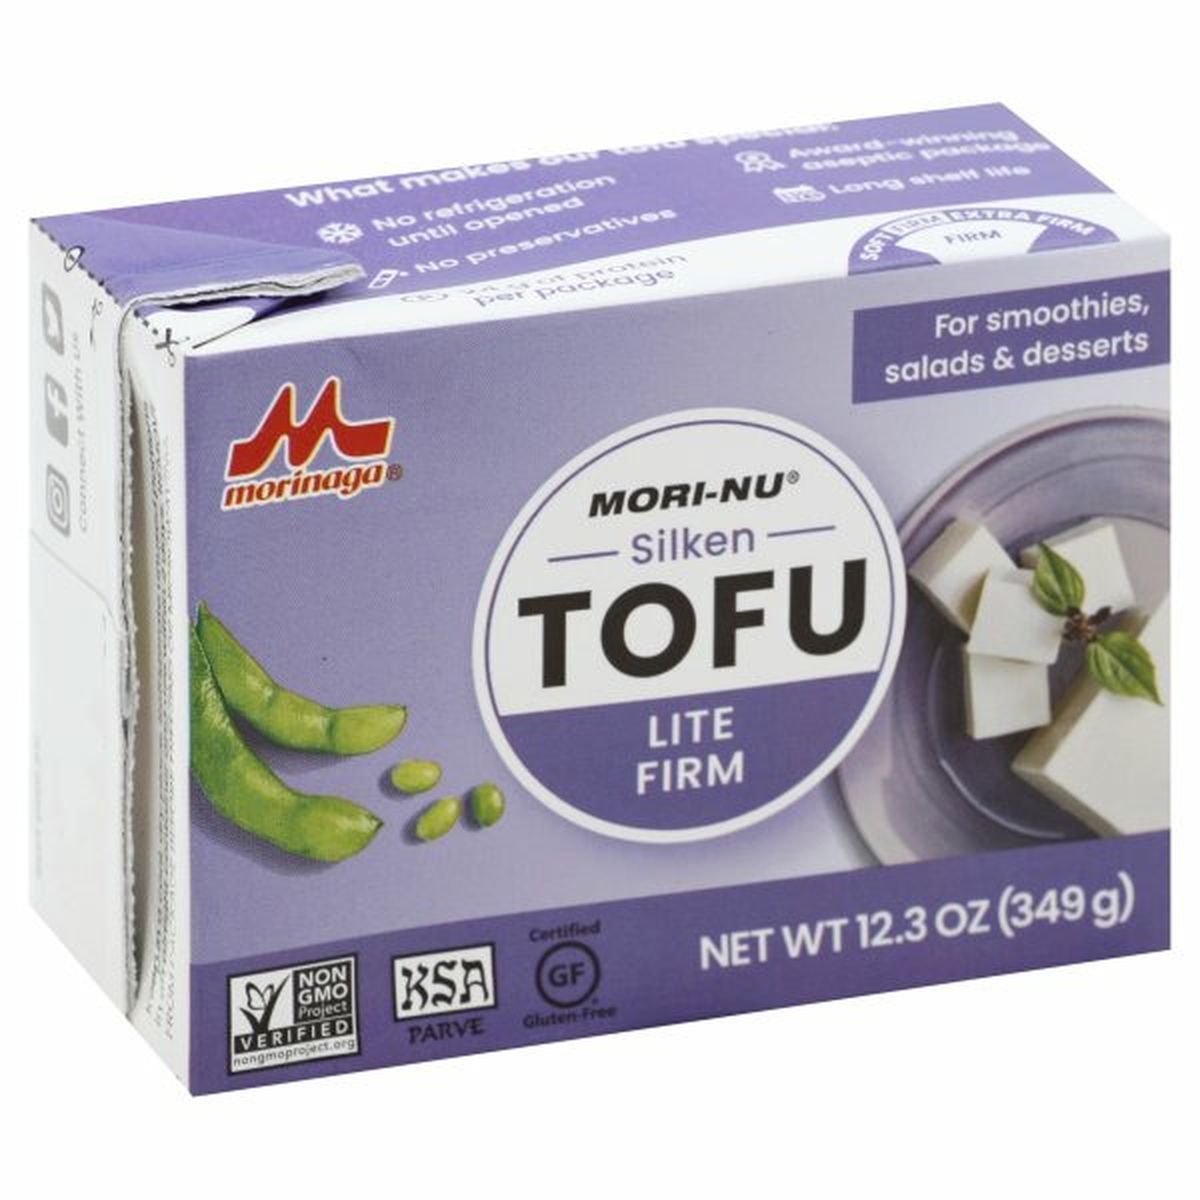 Calories in Mori-Nu Tofu, Lite Firm, Silken